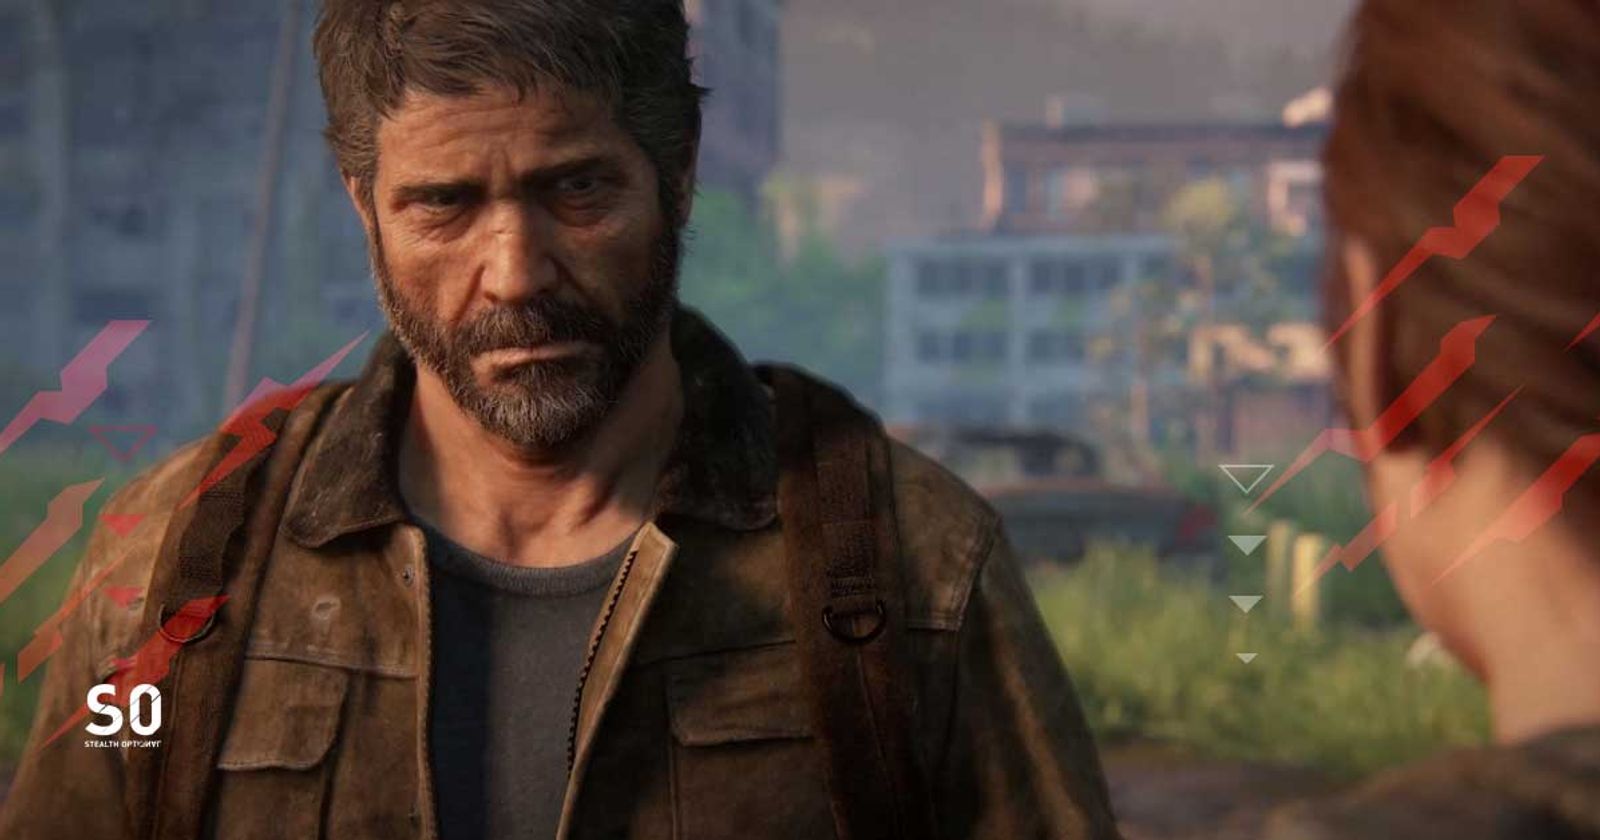 Troy Baker, o Joel de The Last of Us, disse que já testou The Last of Us 2